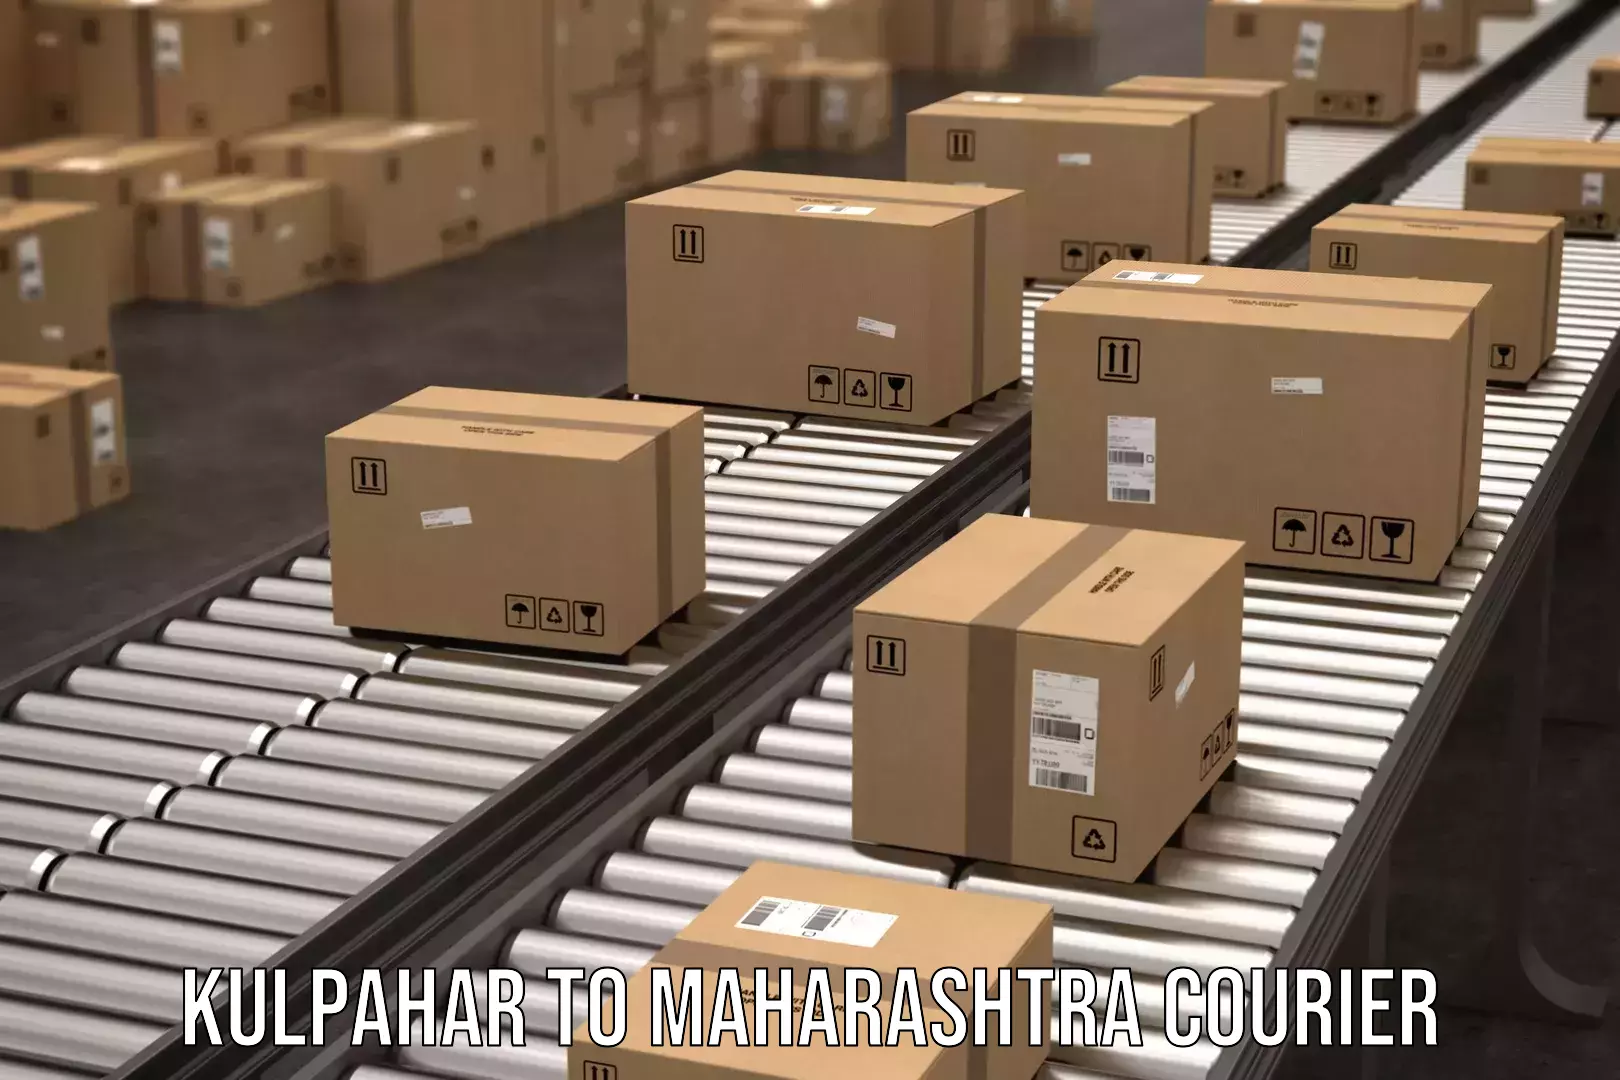 Courier service booking Kulpahar to Maharashtra